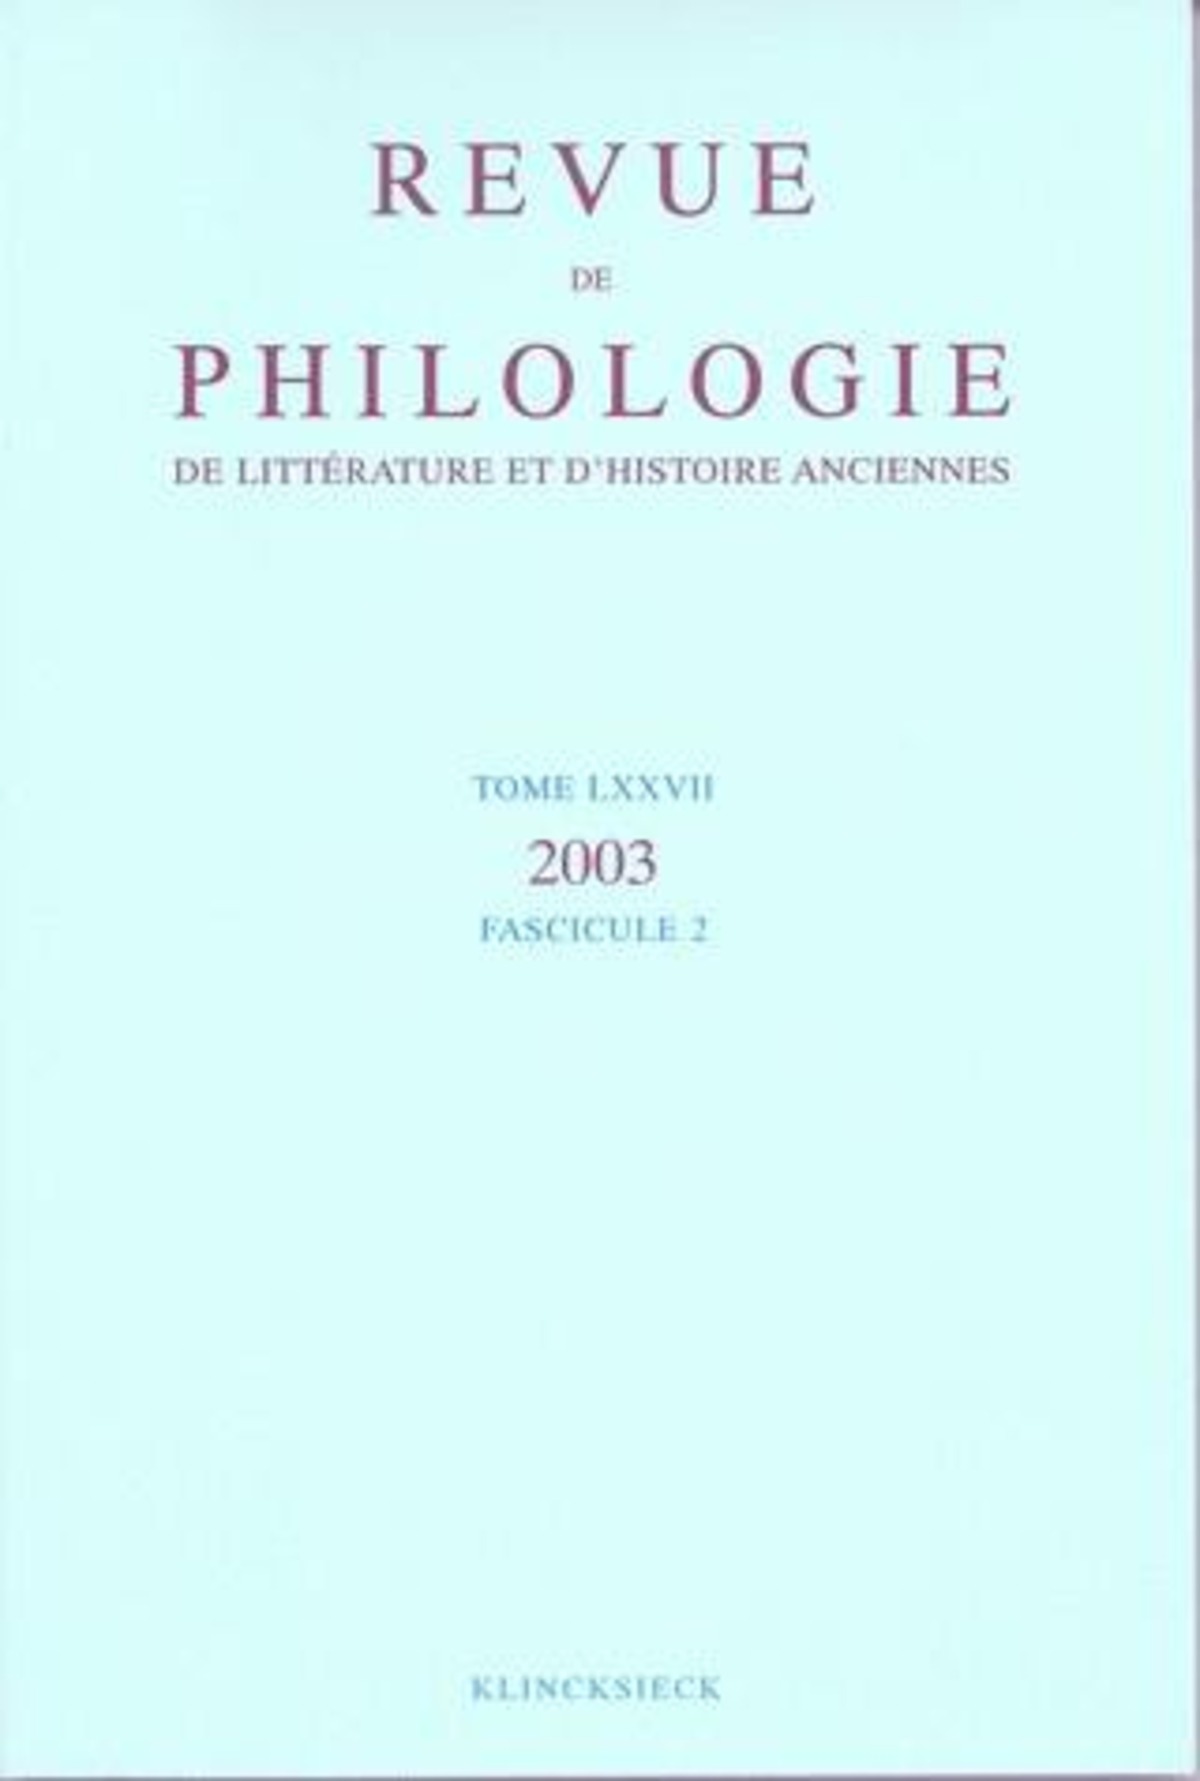 Revue de philologie, de littérature et d'histoire anciennes volume 77